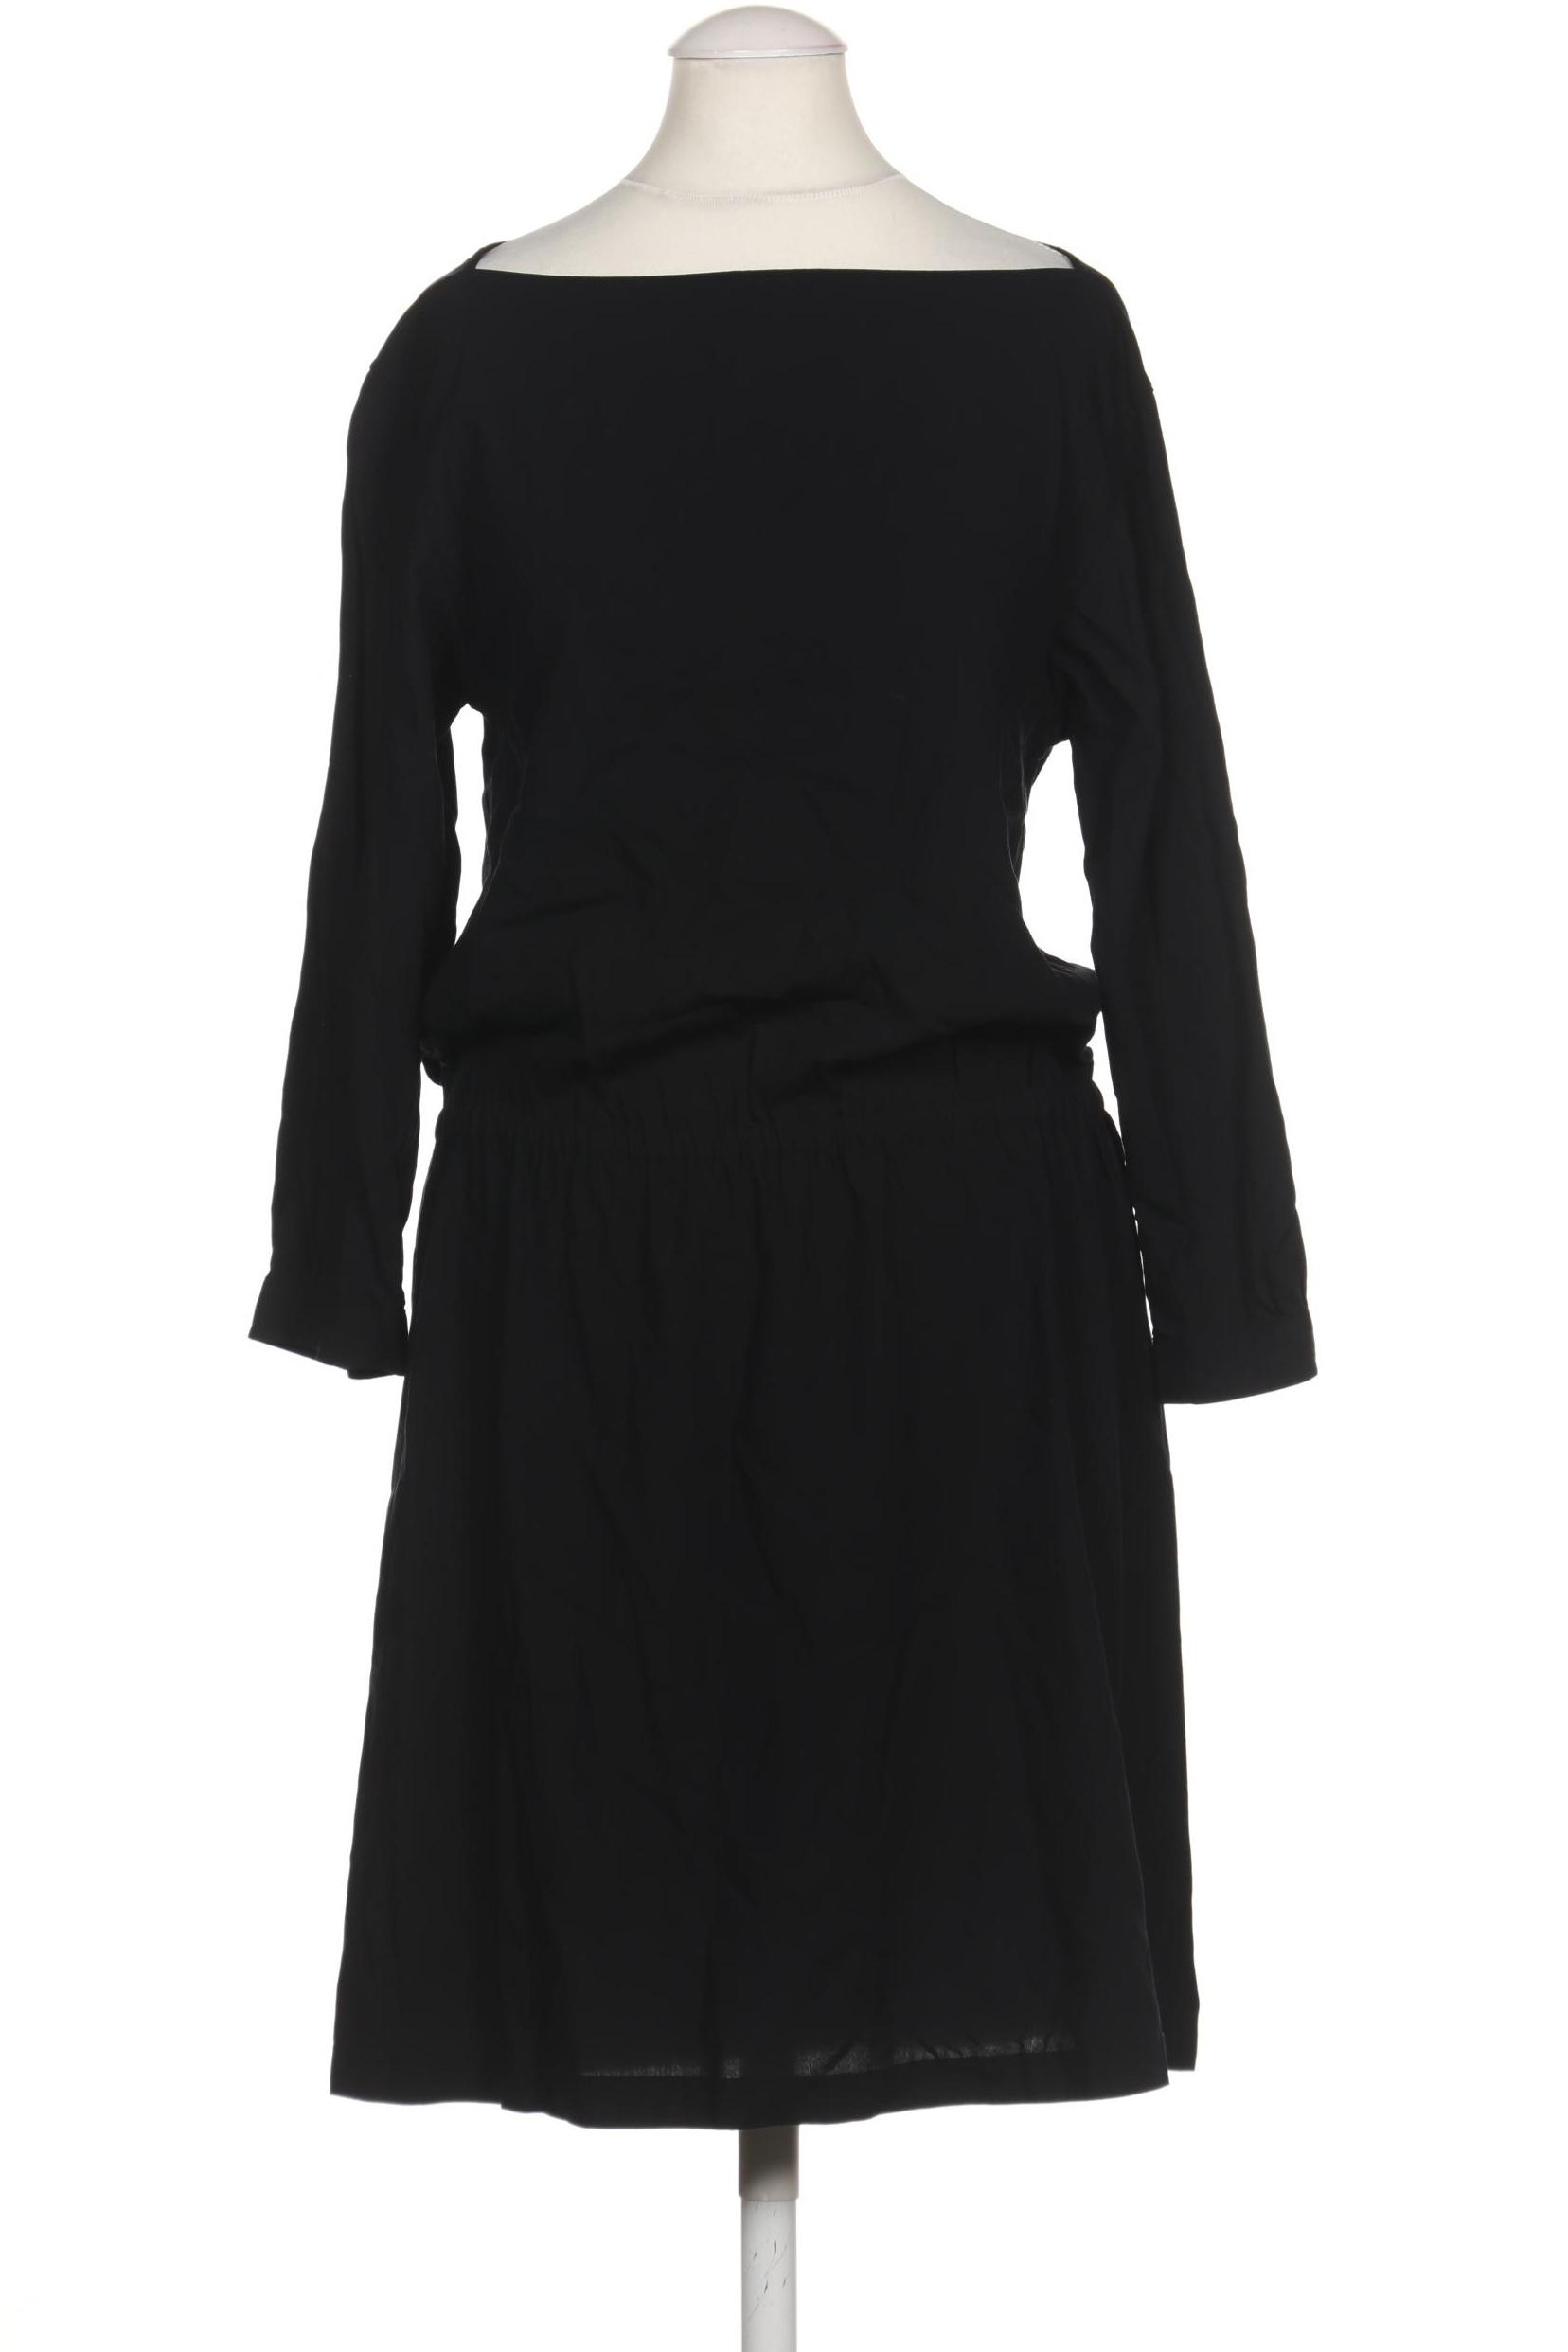 uniqlo Damen Kleid, schwarz, Gr. 34 von uniqlo